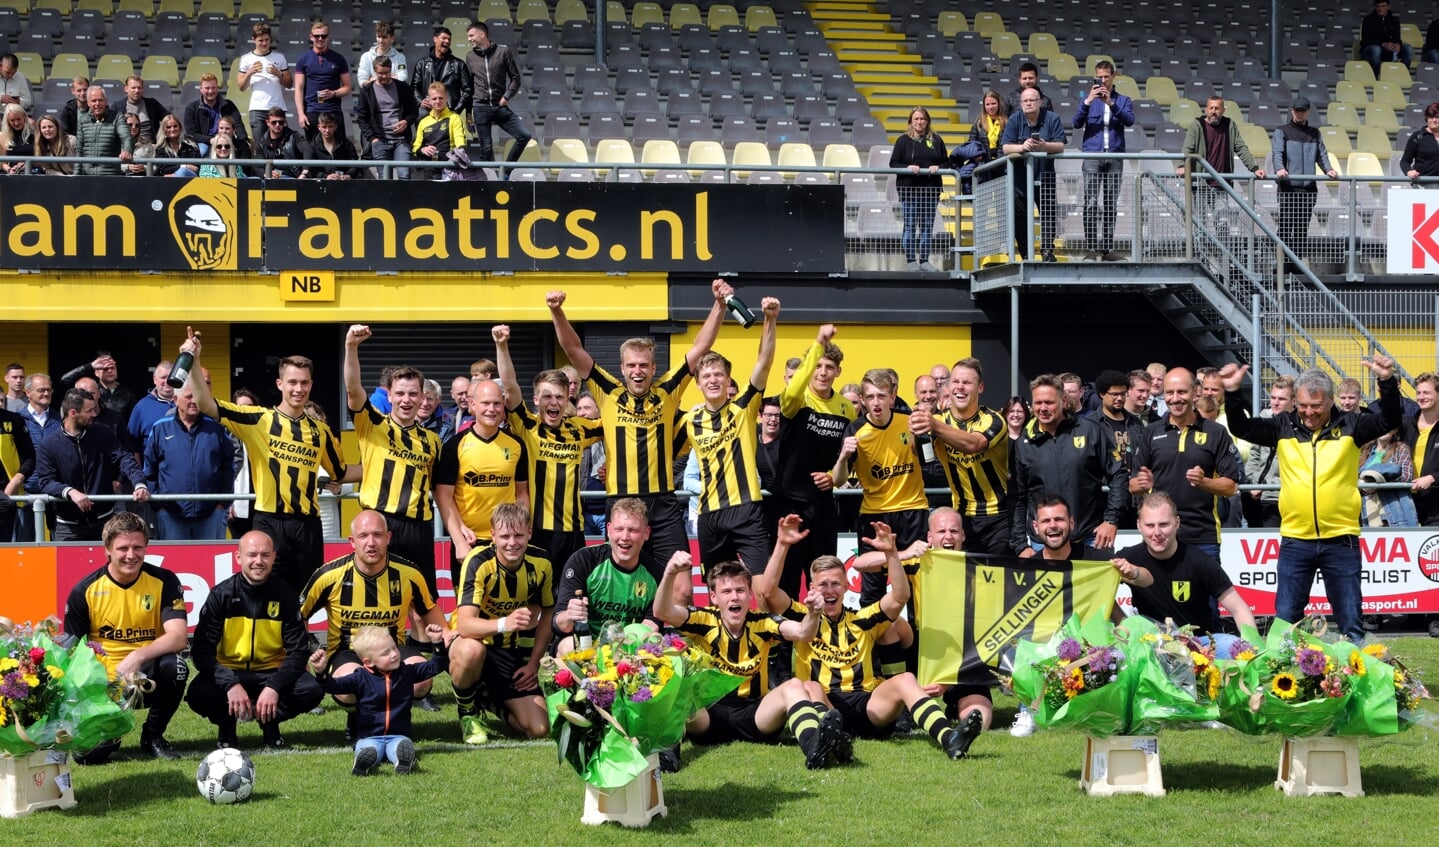 De spelers van Sellingen vieren onder toeziend oog van hun supporters de historische promotie naar de 2e klasse. (foto: Bert Woltjes)